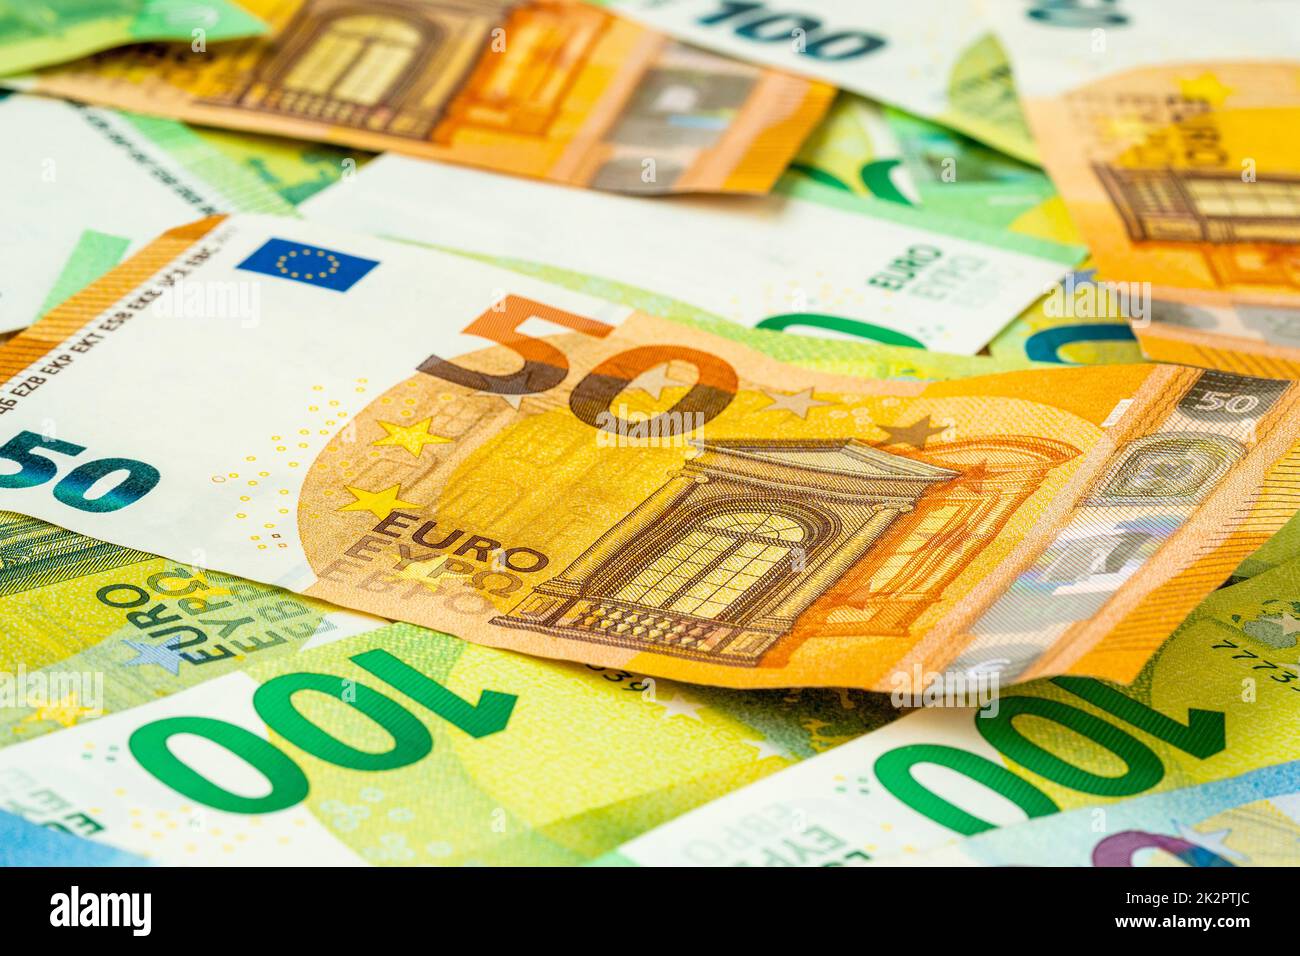 Farbenfroher Hintergrund für Euro-Bargeld Stockfoto